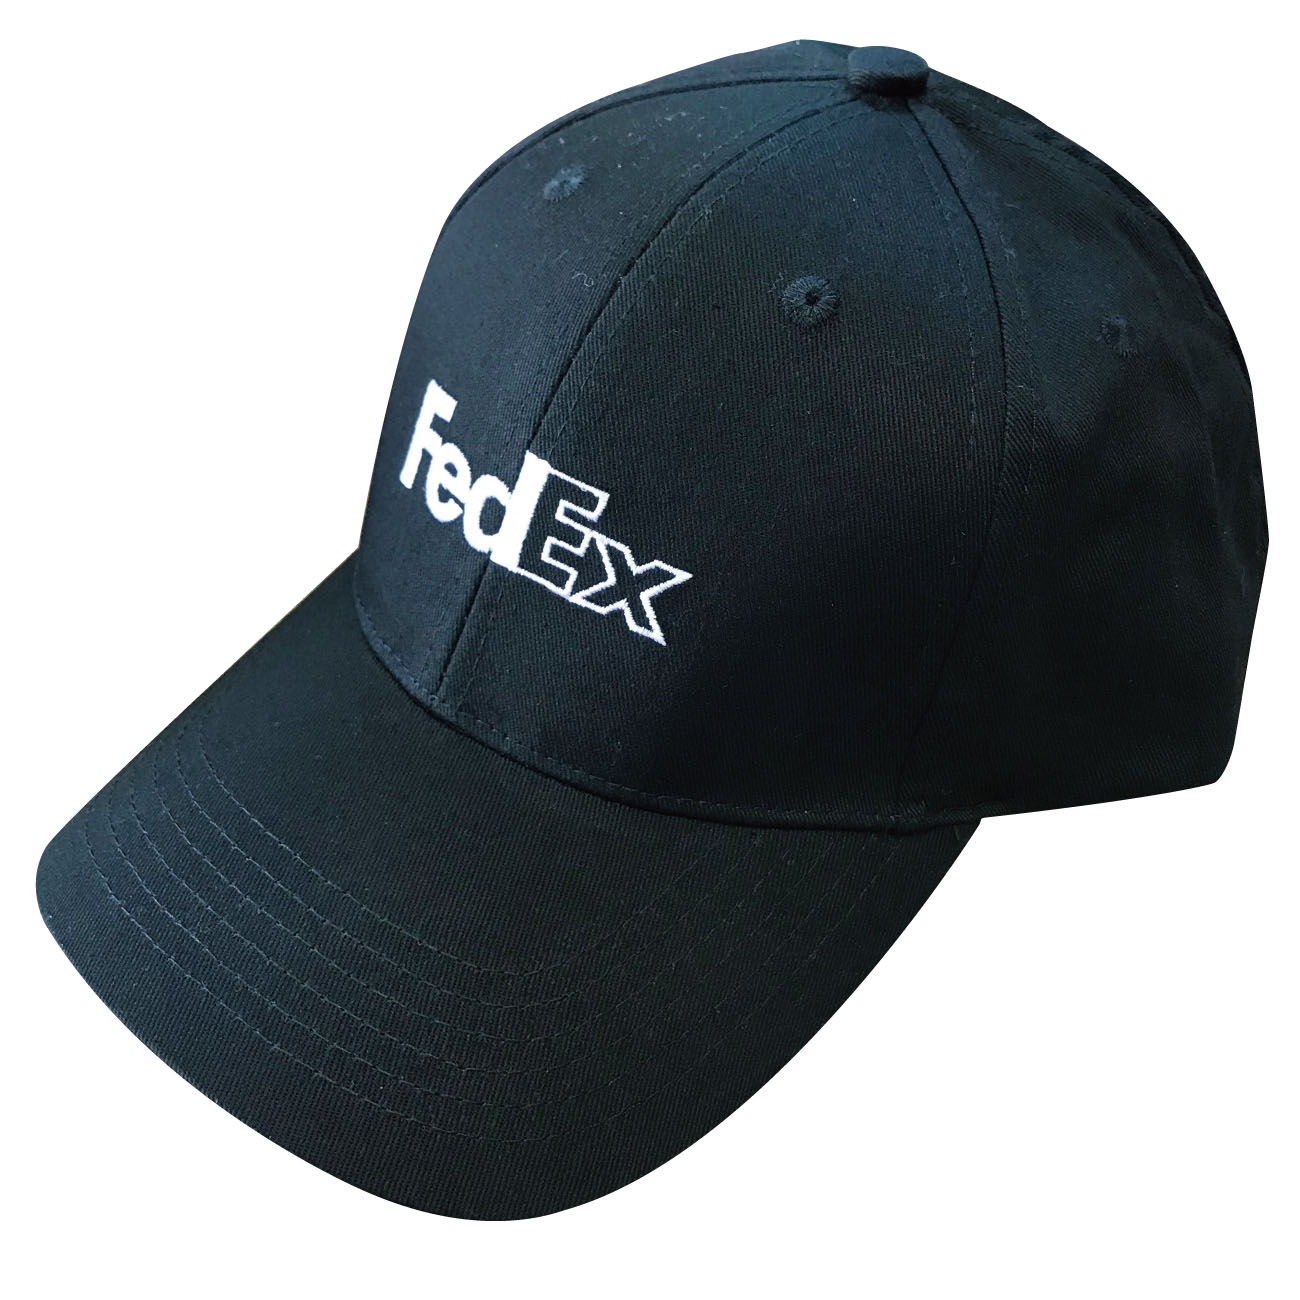 FedEx CAP